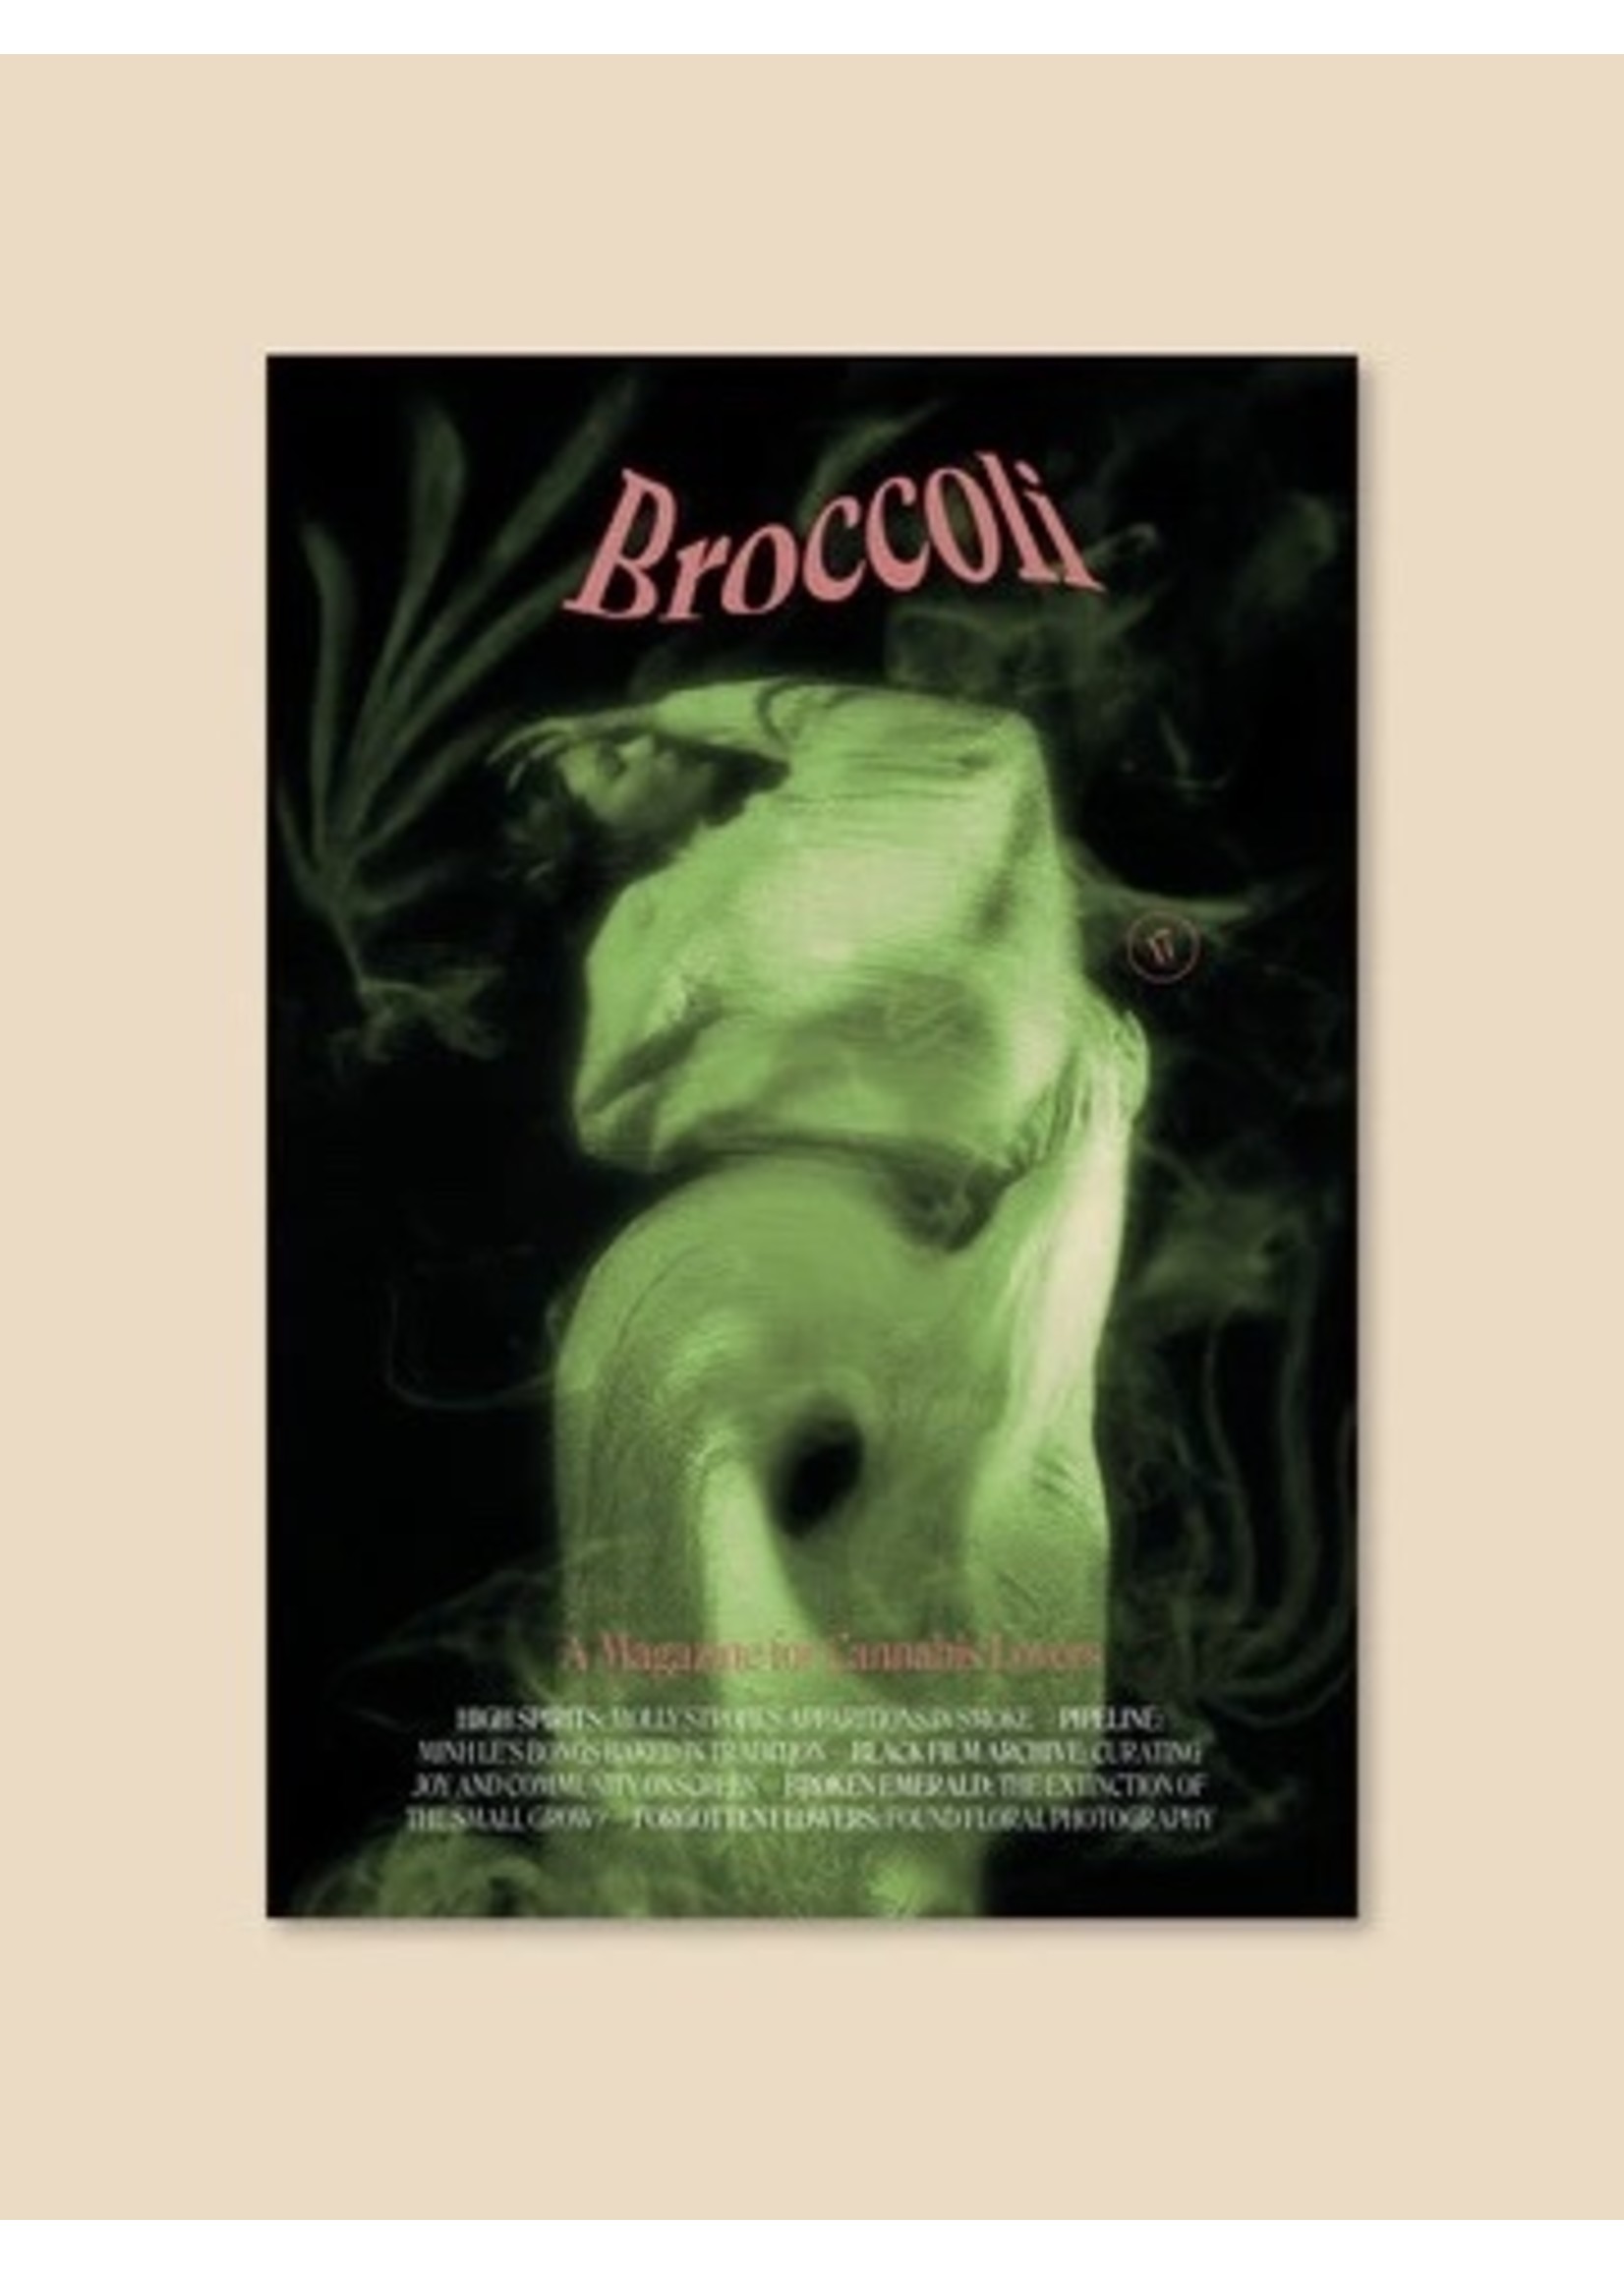 Broccoli Broccoli magazine